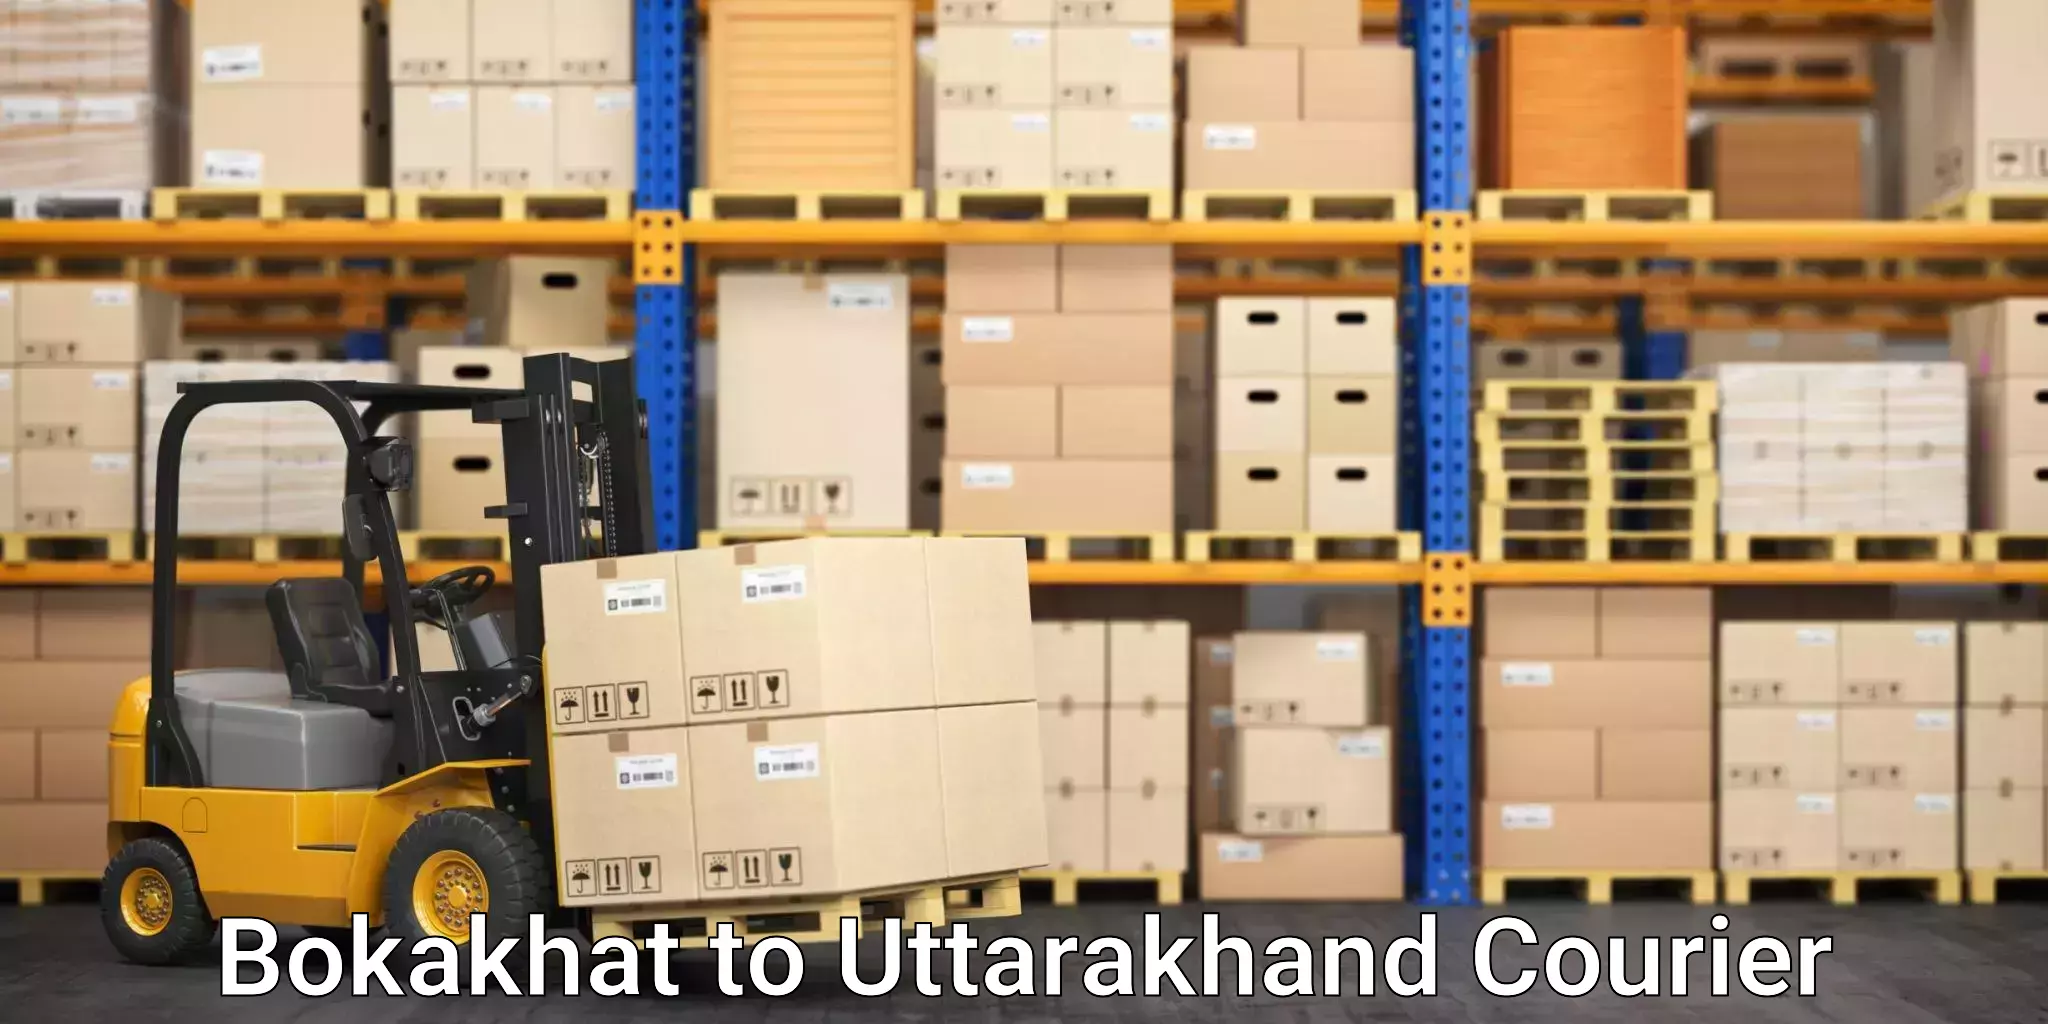 Comprehensive logistics Bokakhat to Dwarahat